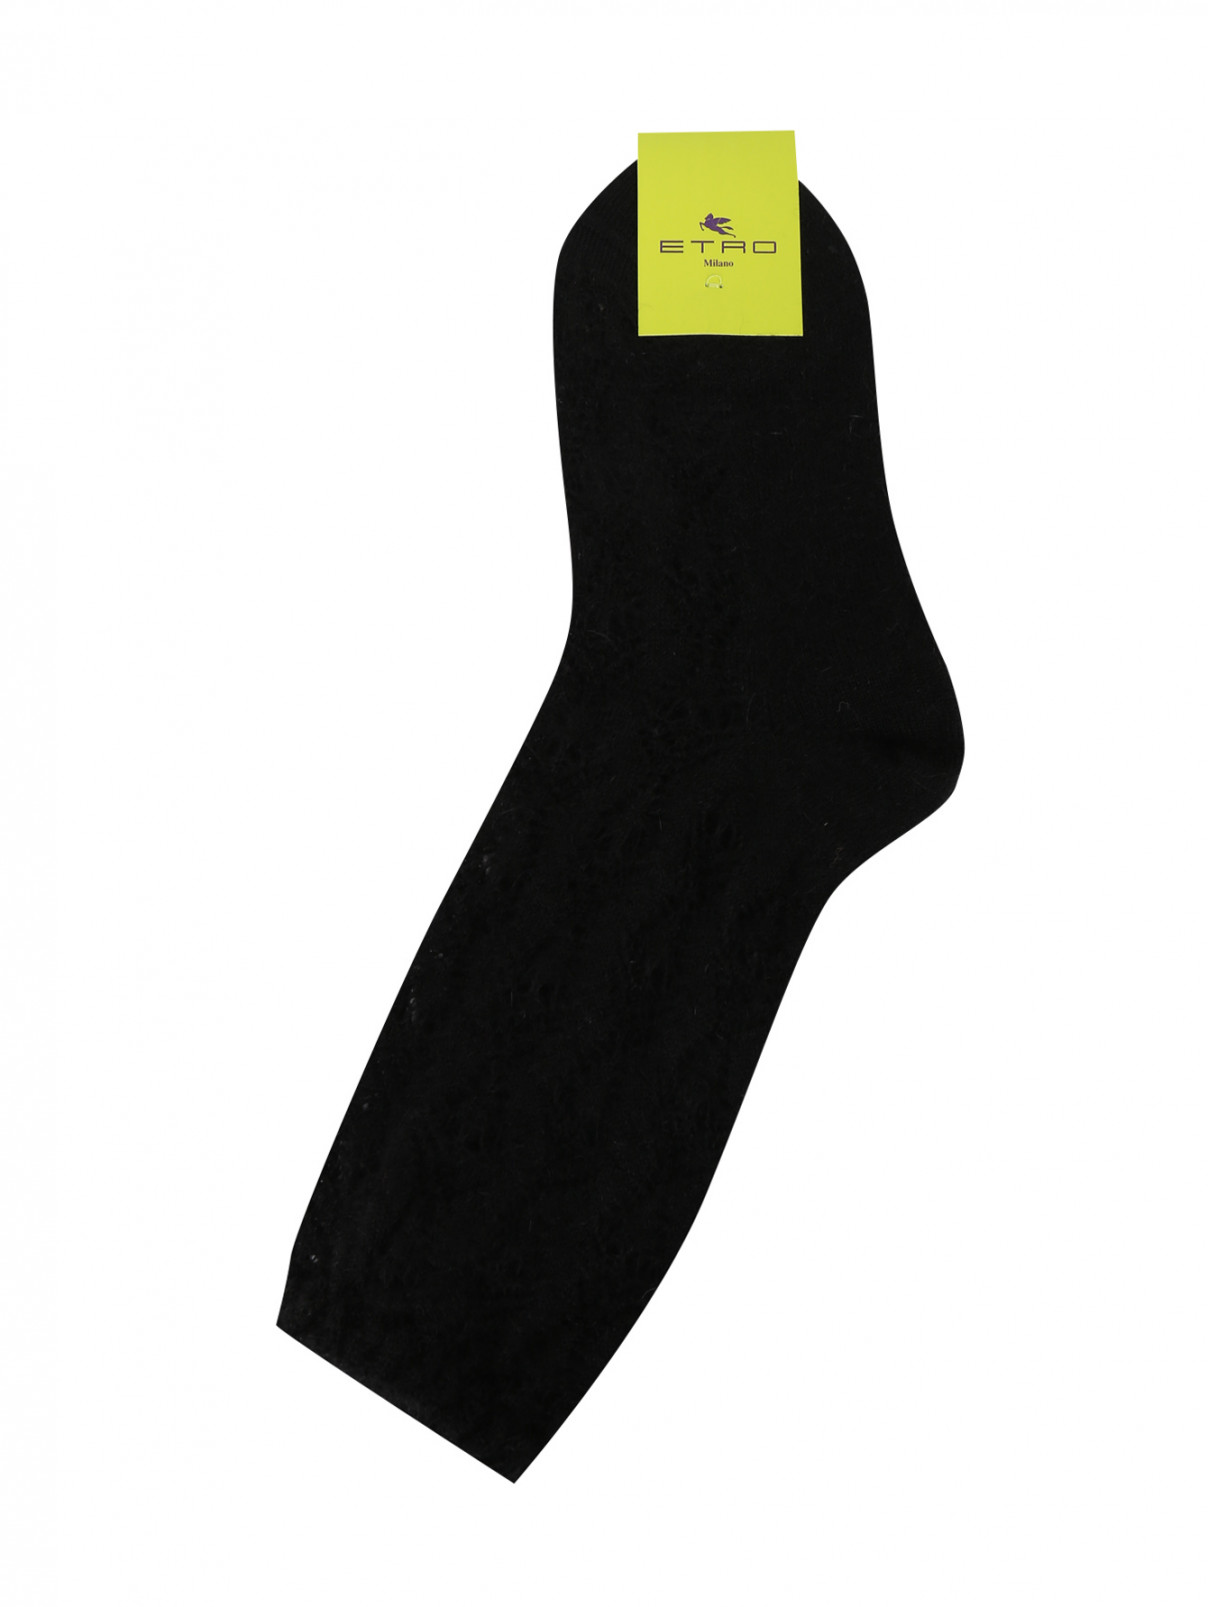 Носки ажурной вязки Etro  –  Общий вид  – Цвет:  Черный